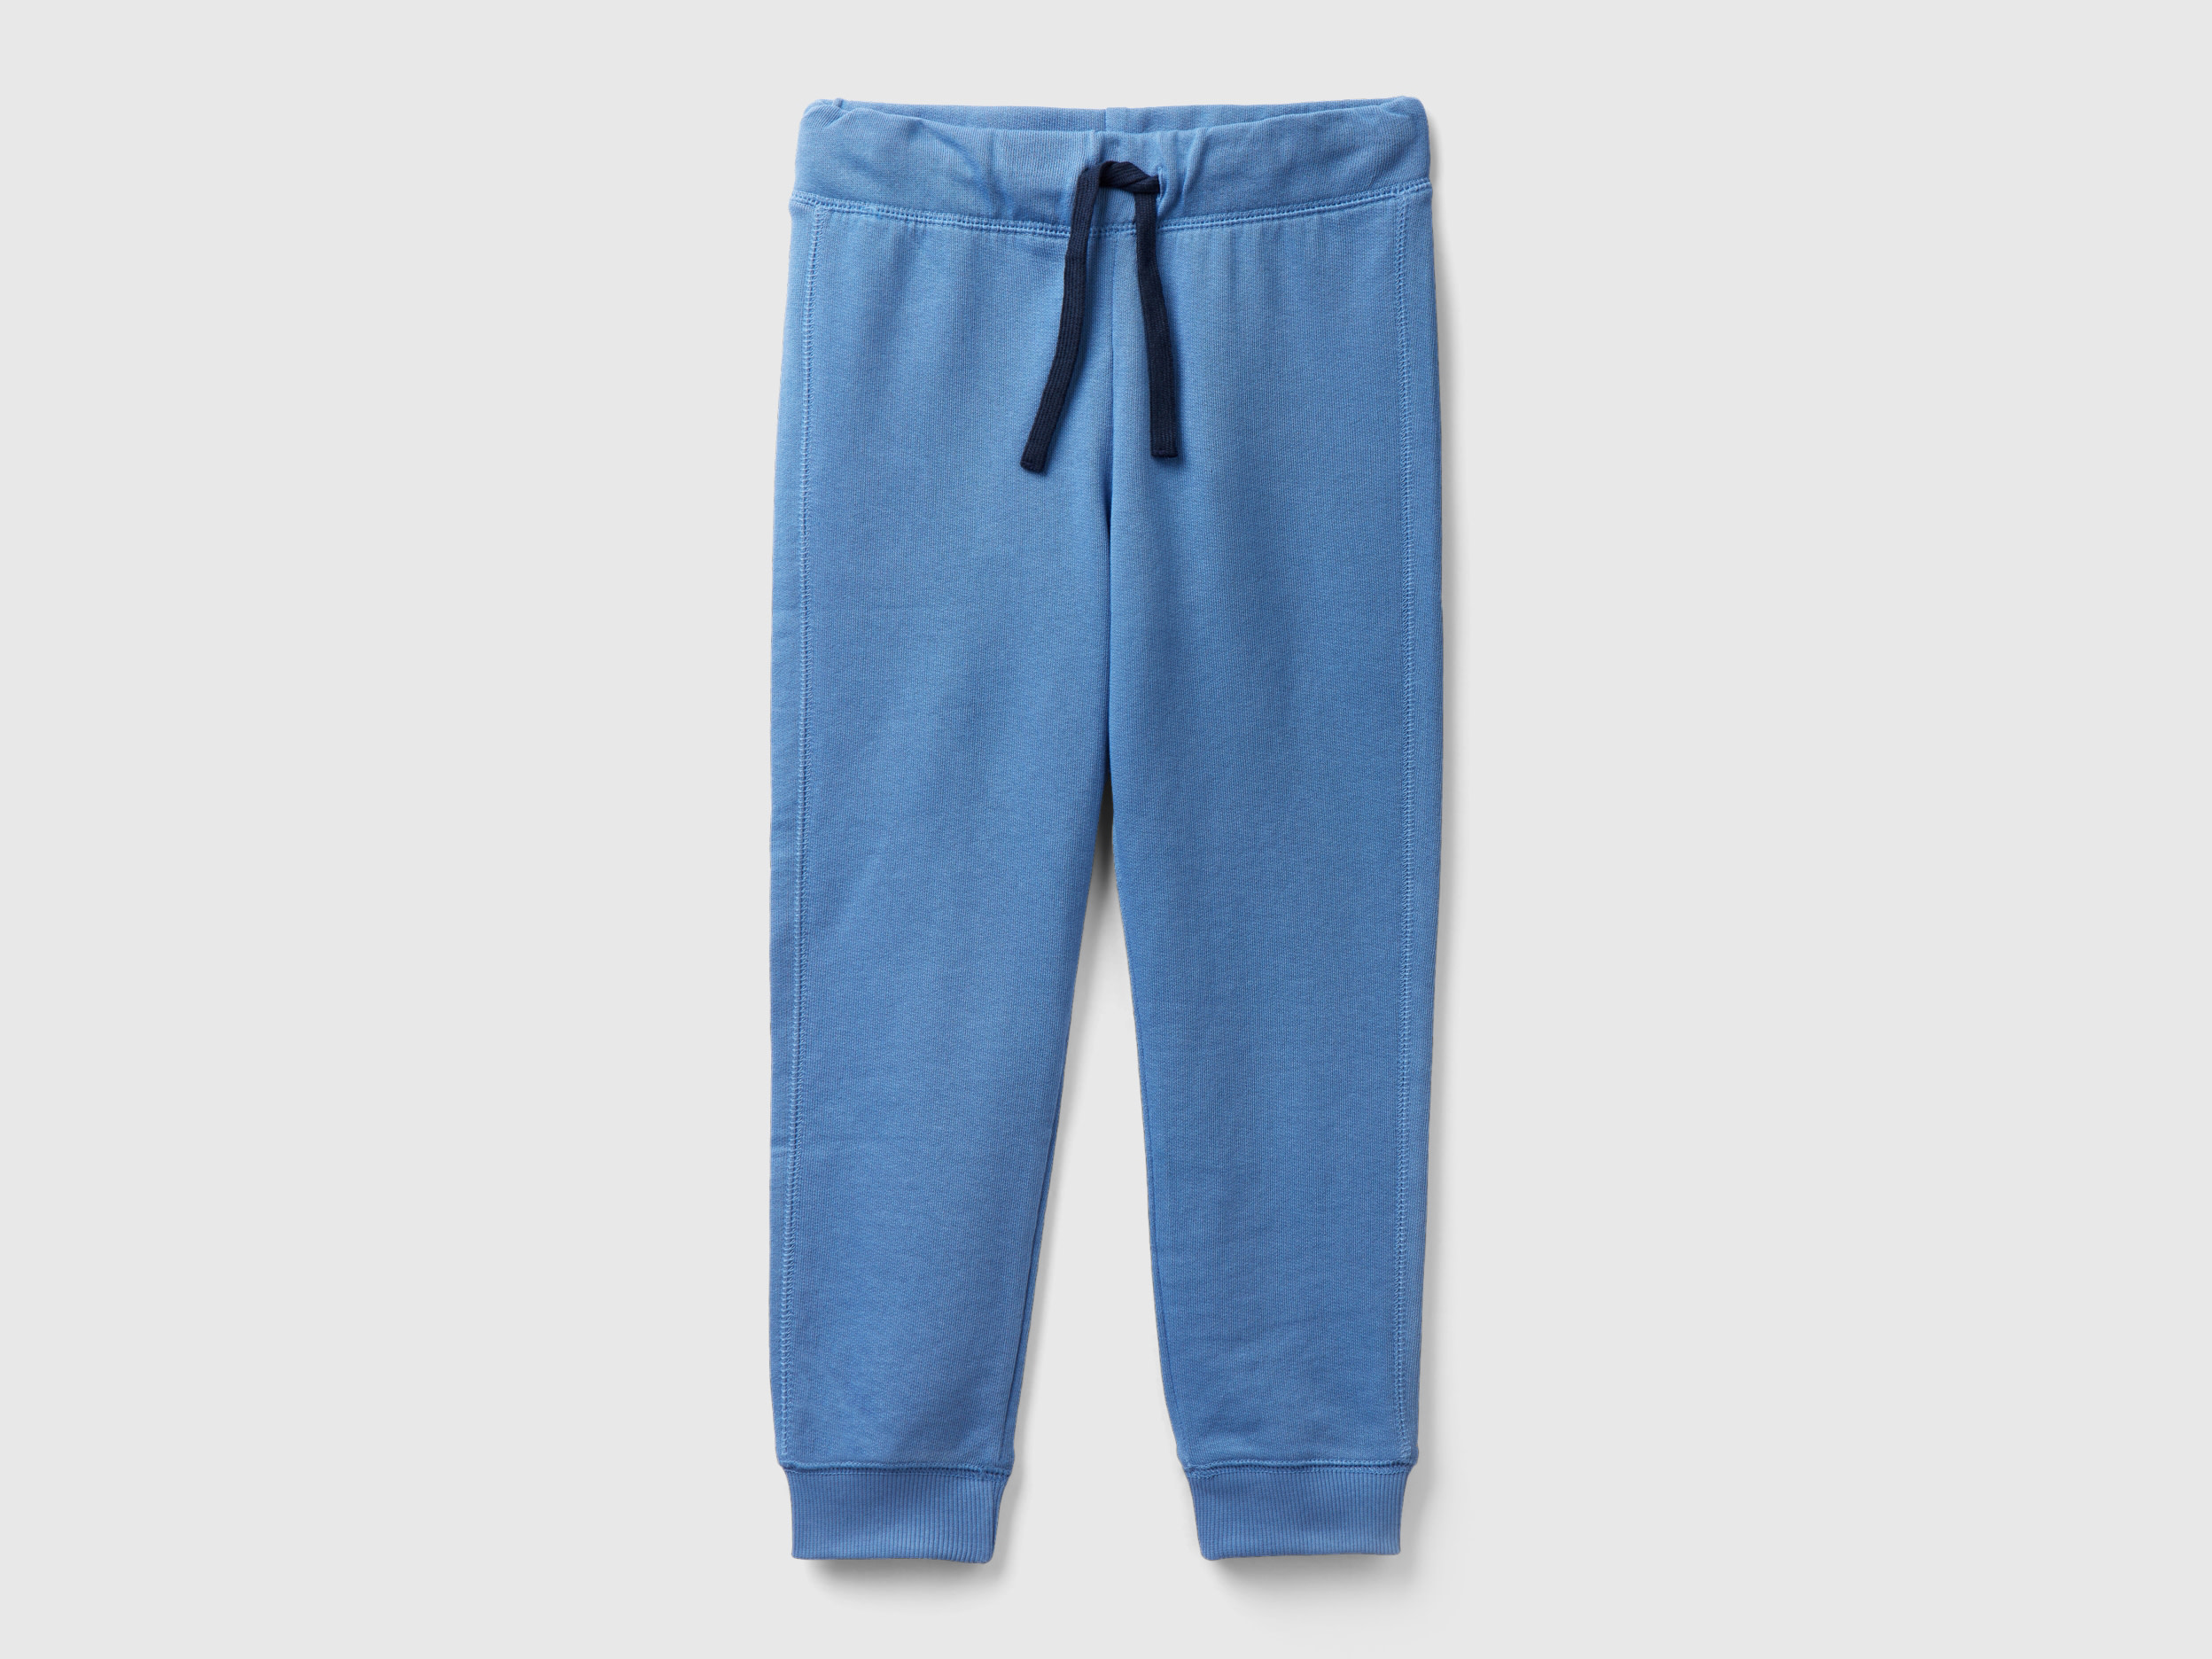 Benetton, 100% Cotton Sweatpants, size 3XL, Light Blue, Kids